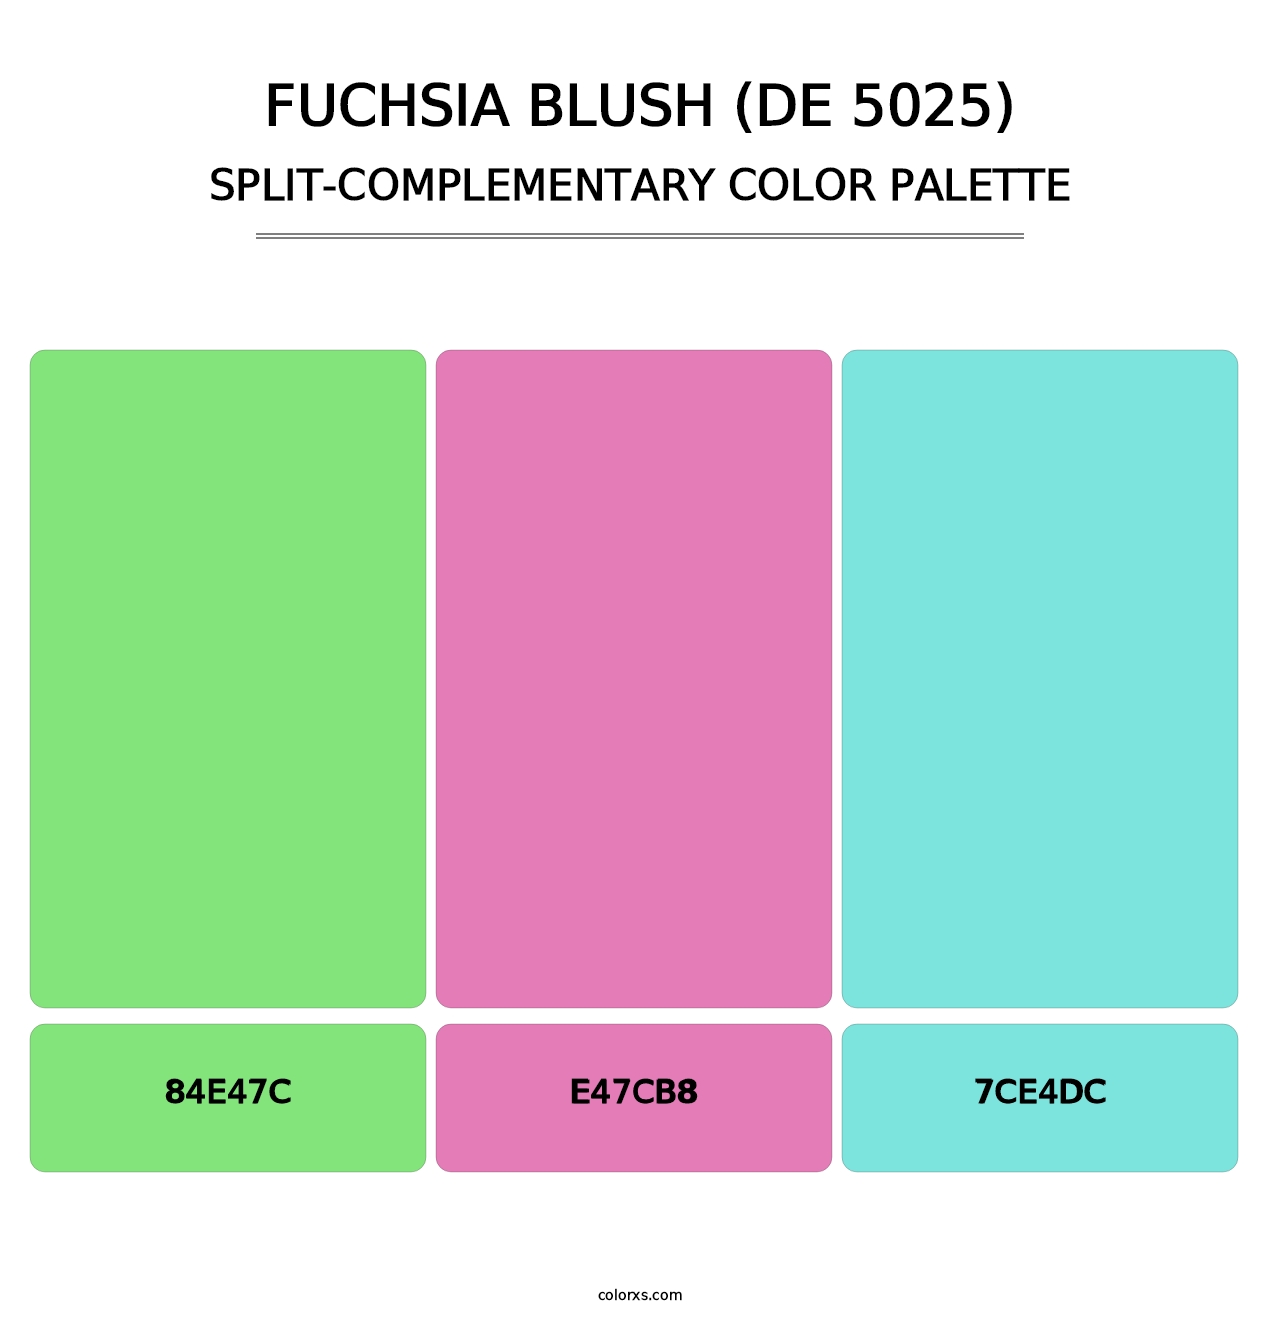 Fuchsia Blush (DE 5025) - Split-Complementary Color Palette